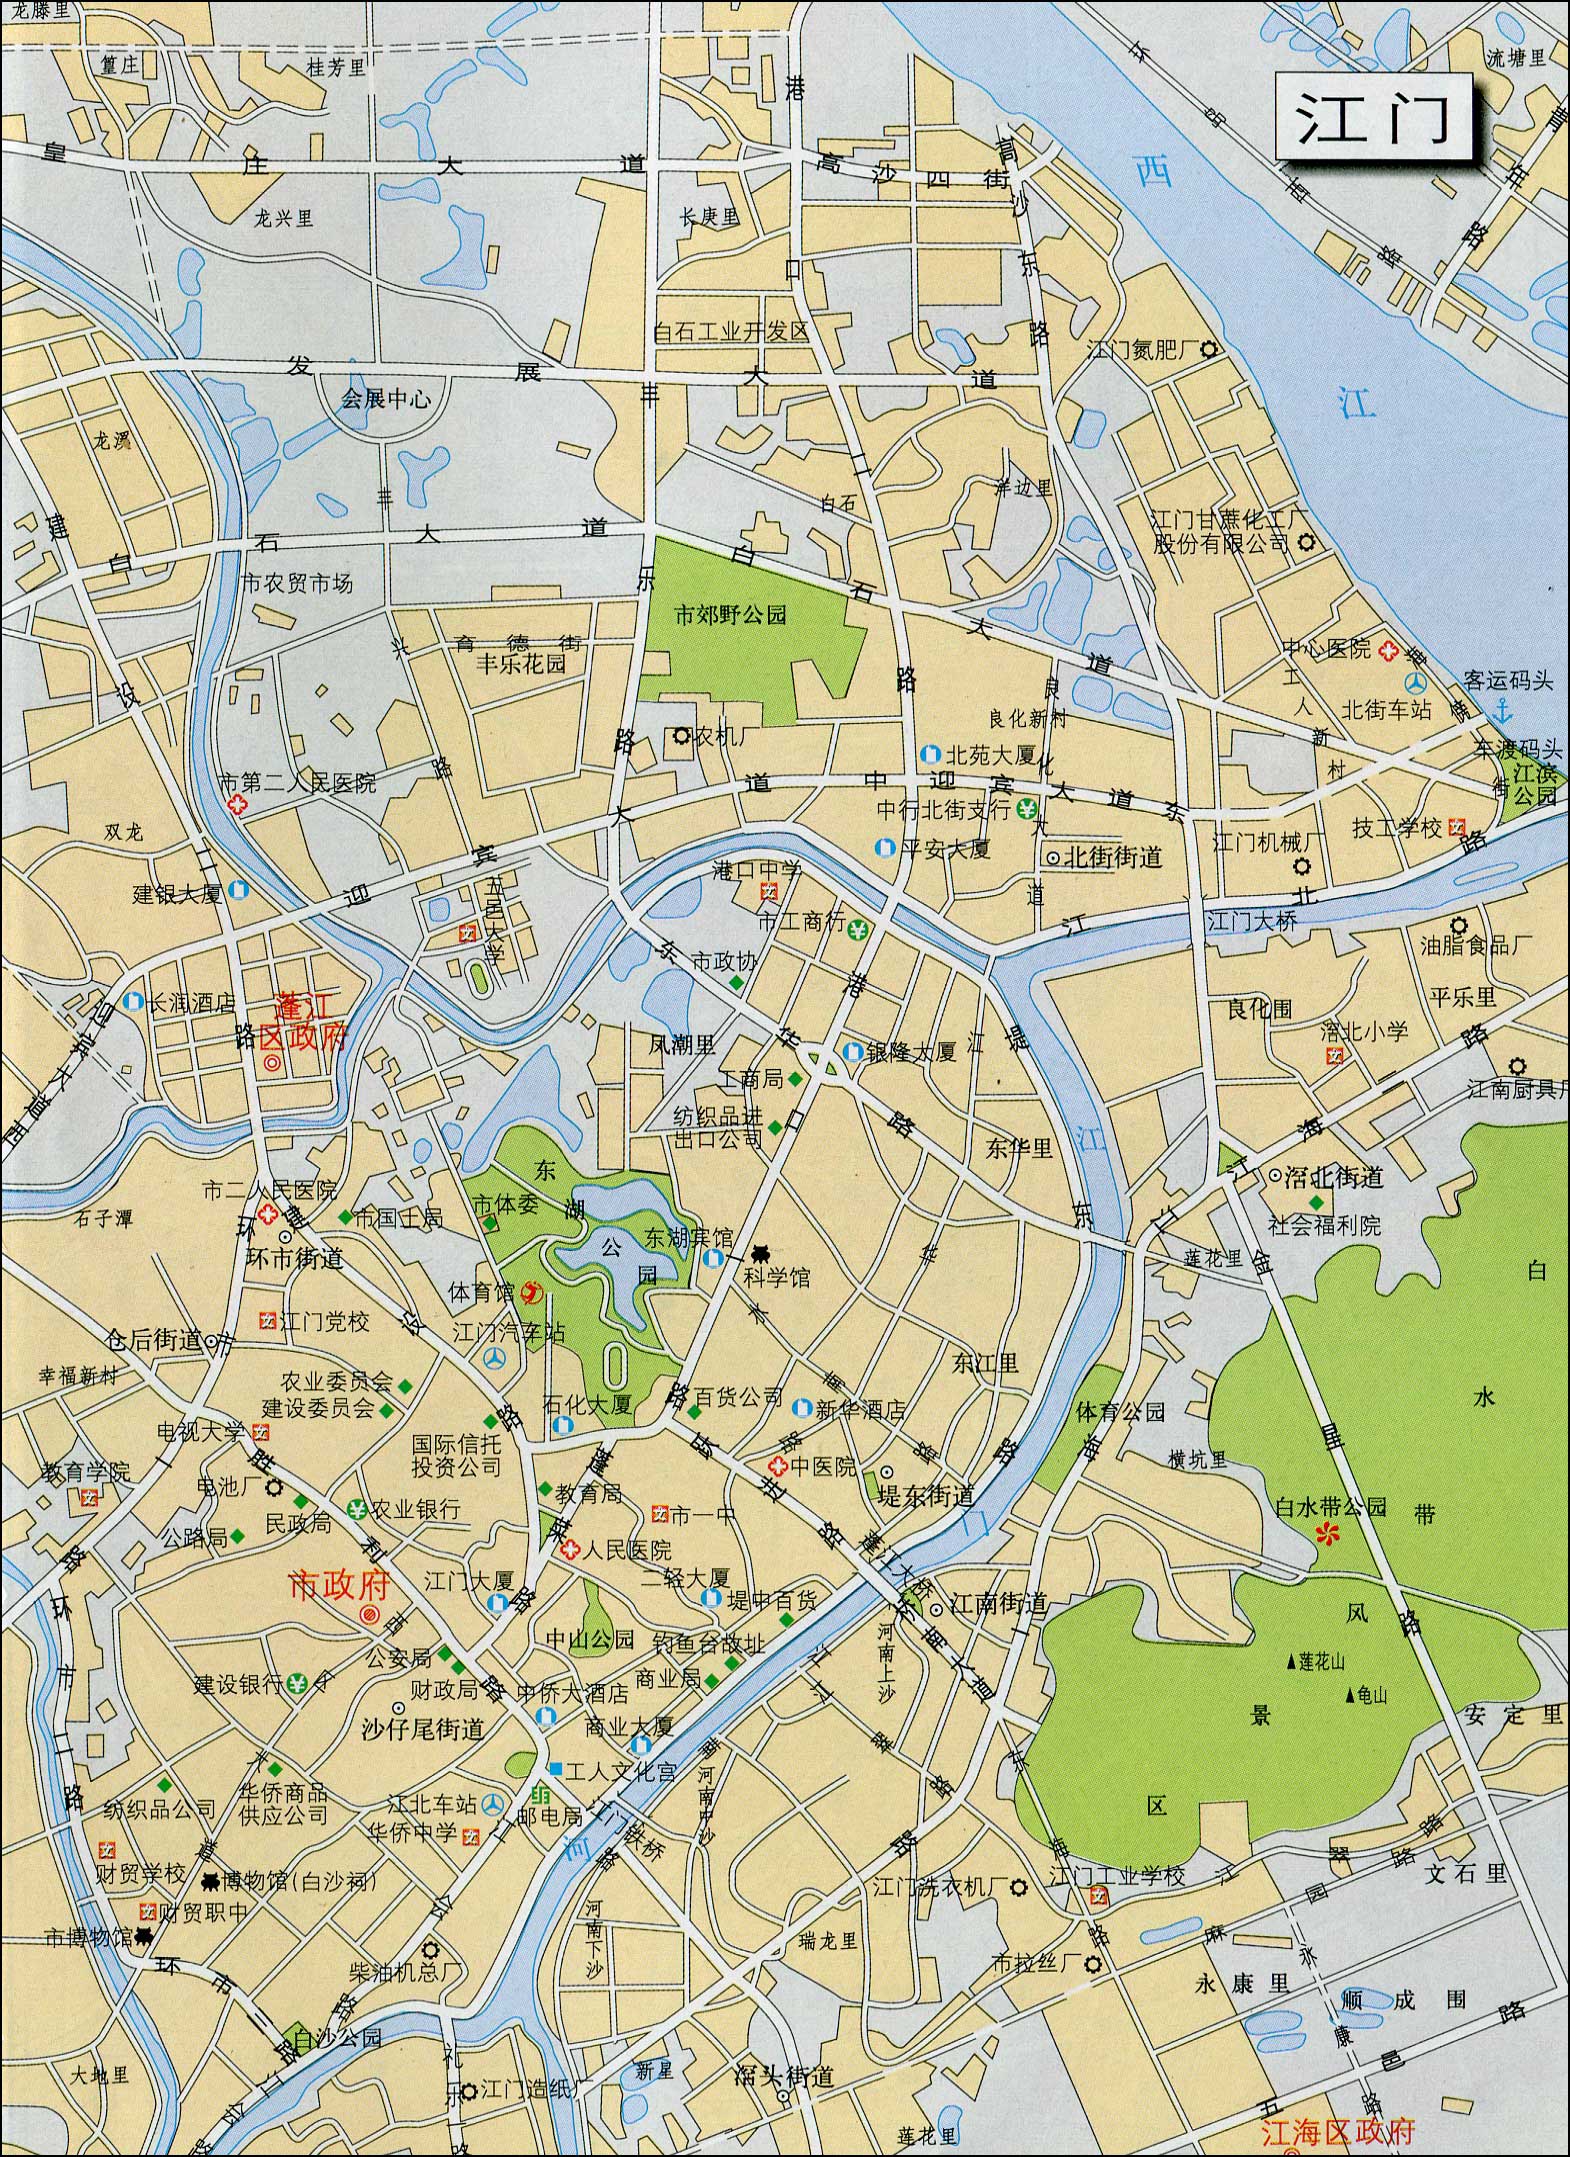 广东省江门市,是地级市,下面一个有三区四市(蓬江区,江海区,新会区,恩图片